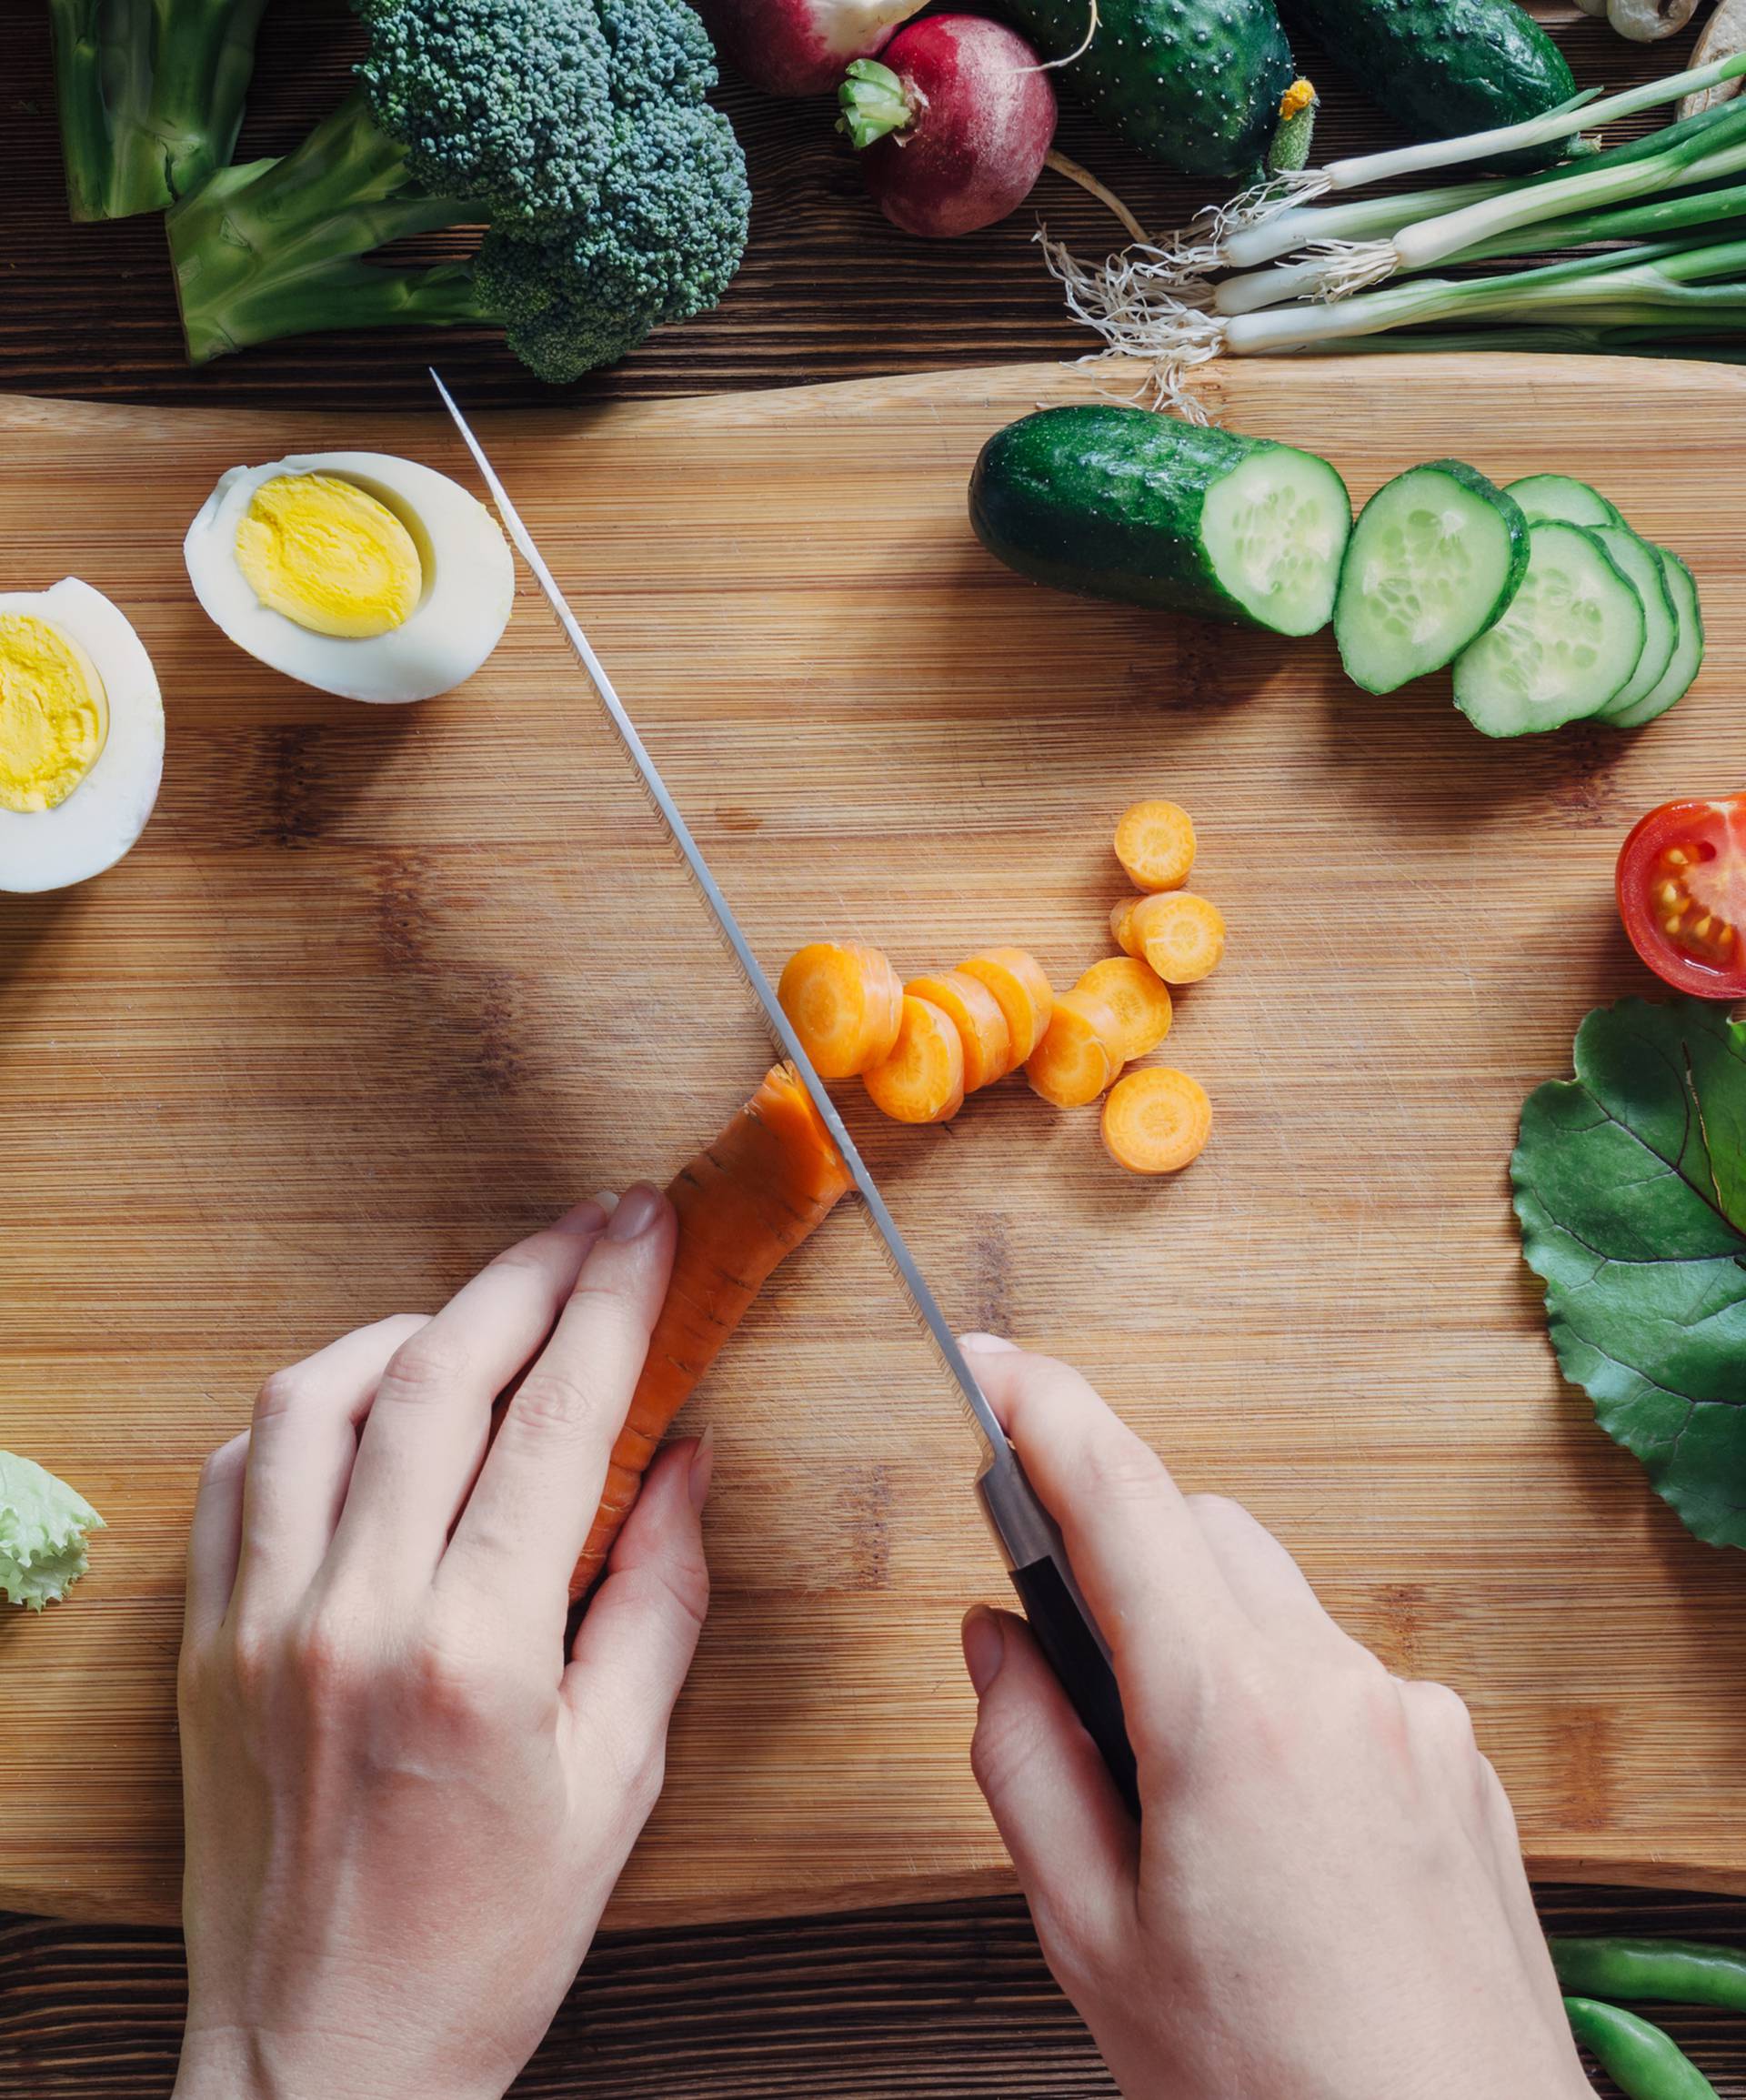 17 načina da ojačate imunitet: Jedite našu hranu i  kuhano